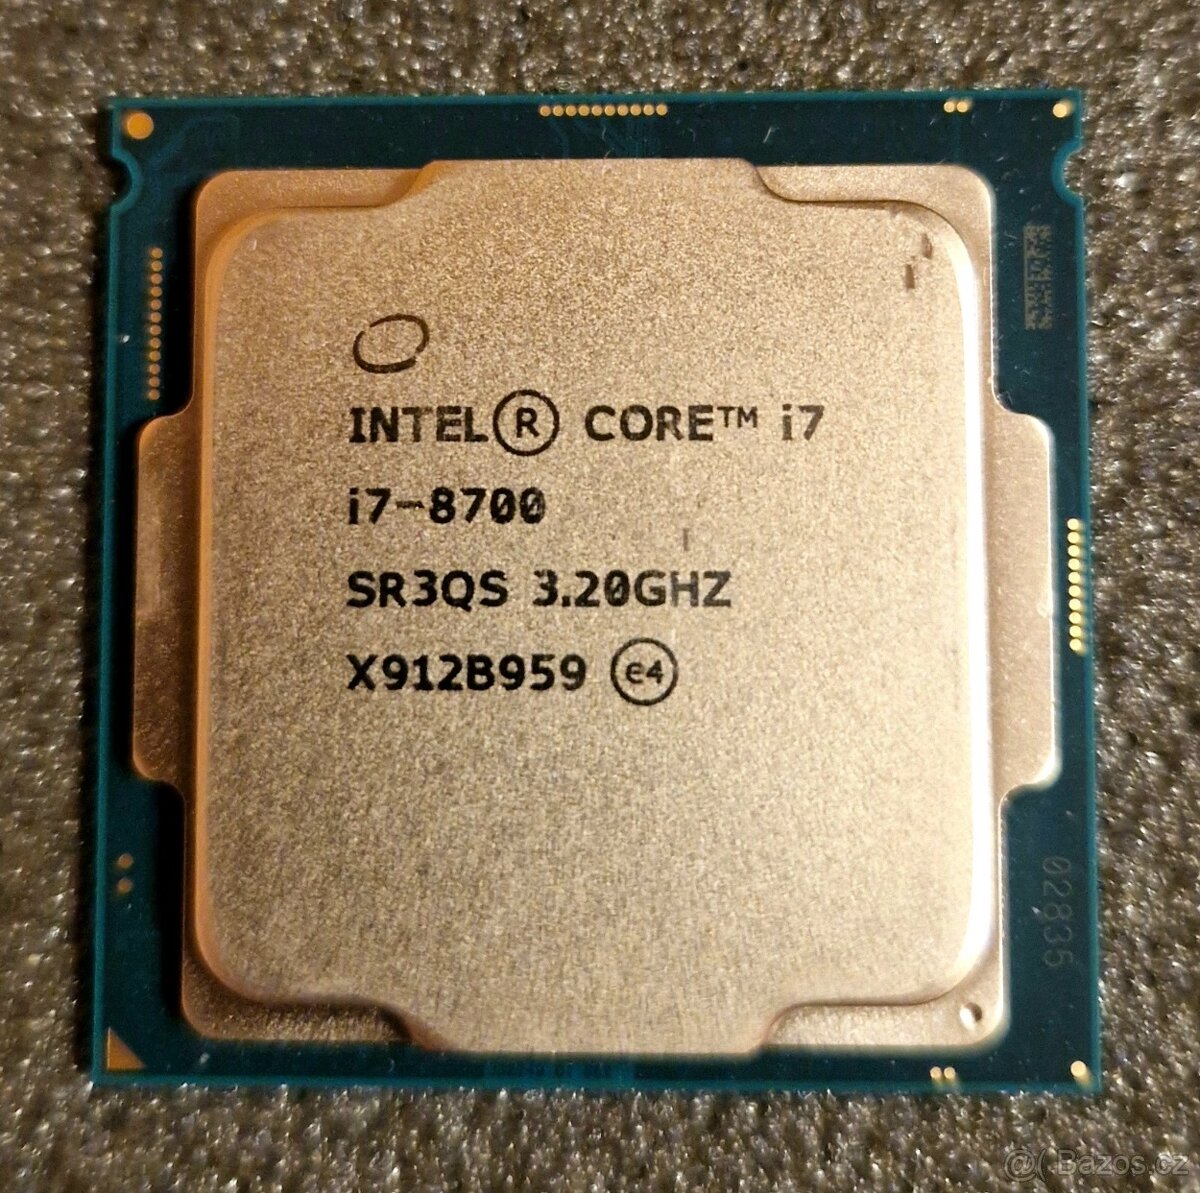 Procesor Intel Core i7-8700 FCLGA1151 Coffee Lake CPU